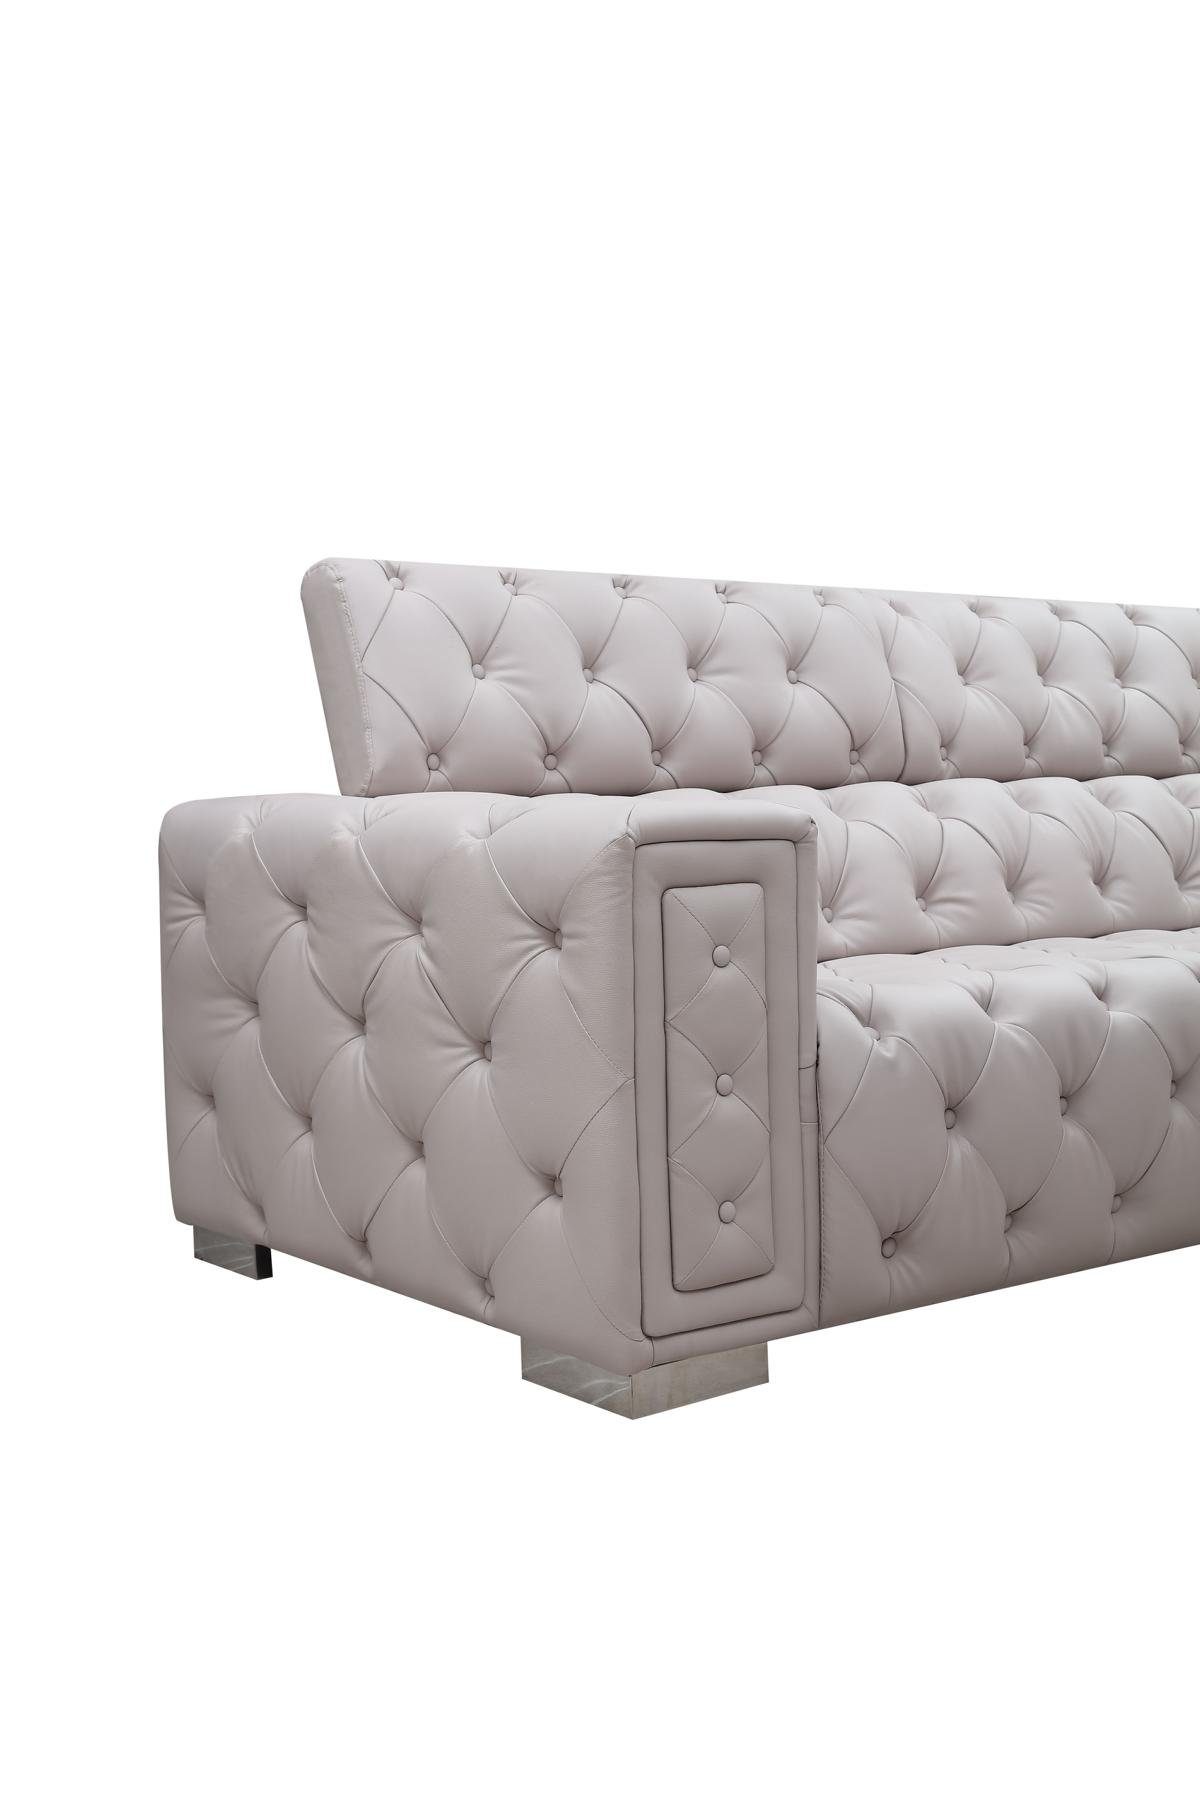 JVmoebel Wohnzimmer-Set, Couch Set Design Sitzer Neu 3+2 Chesterfield Sofagarnitur